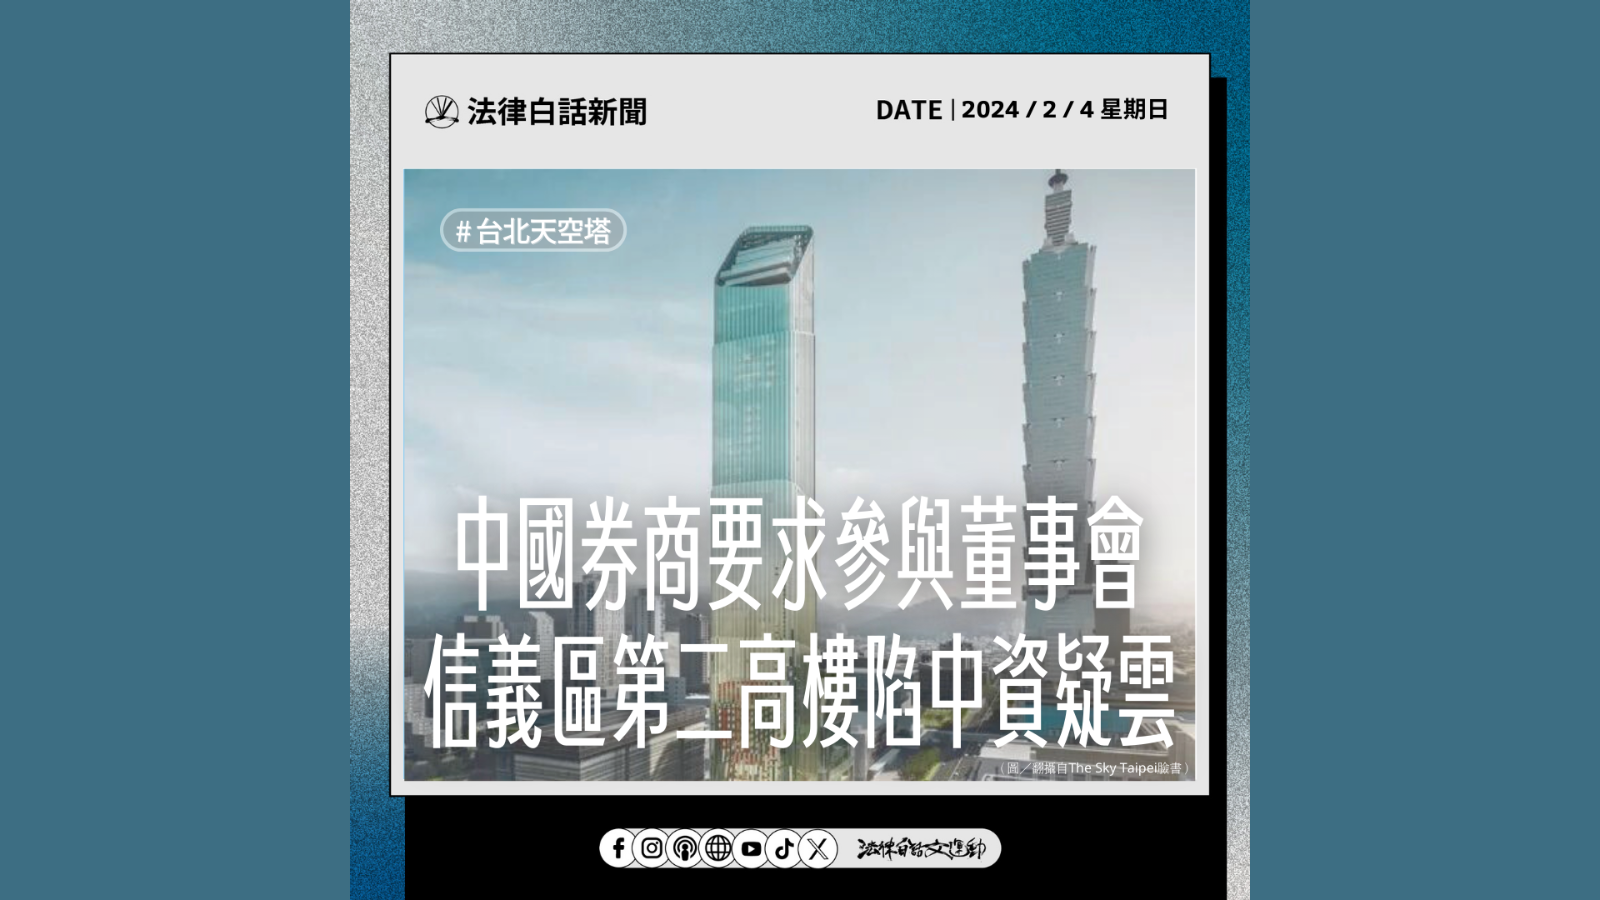 中國券商要求參與董事會，信義區第二高樓陷中資疑雲